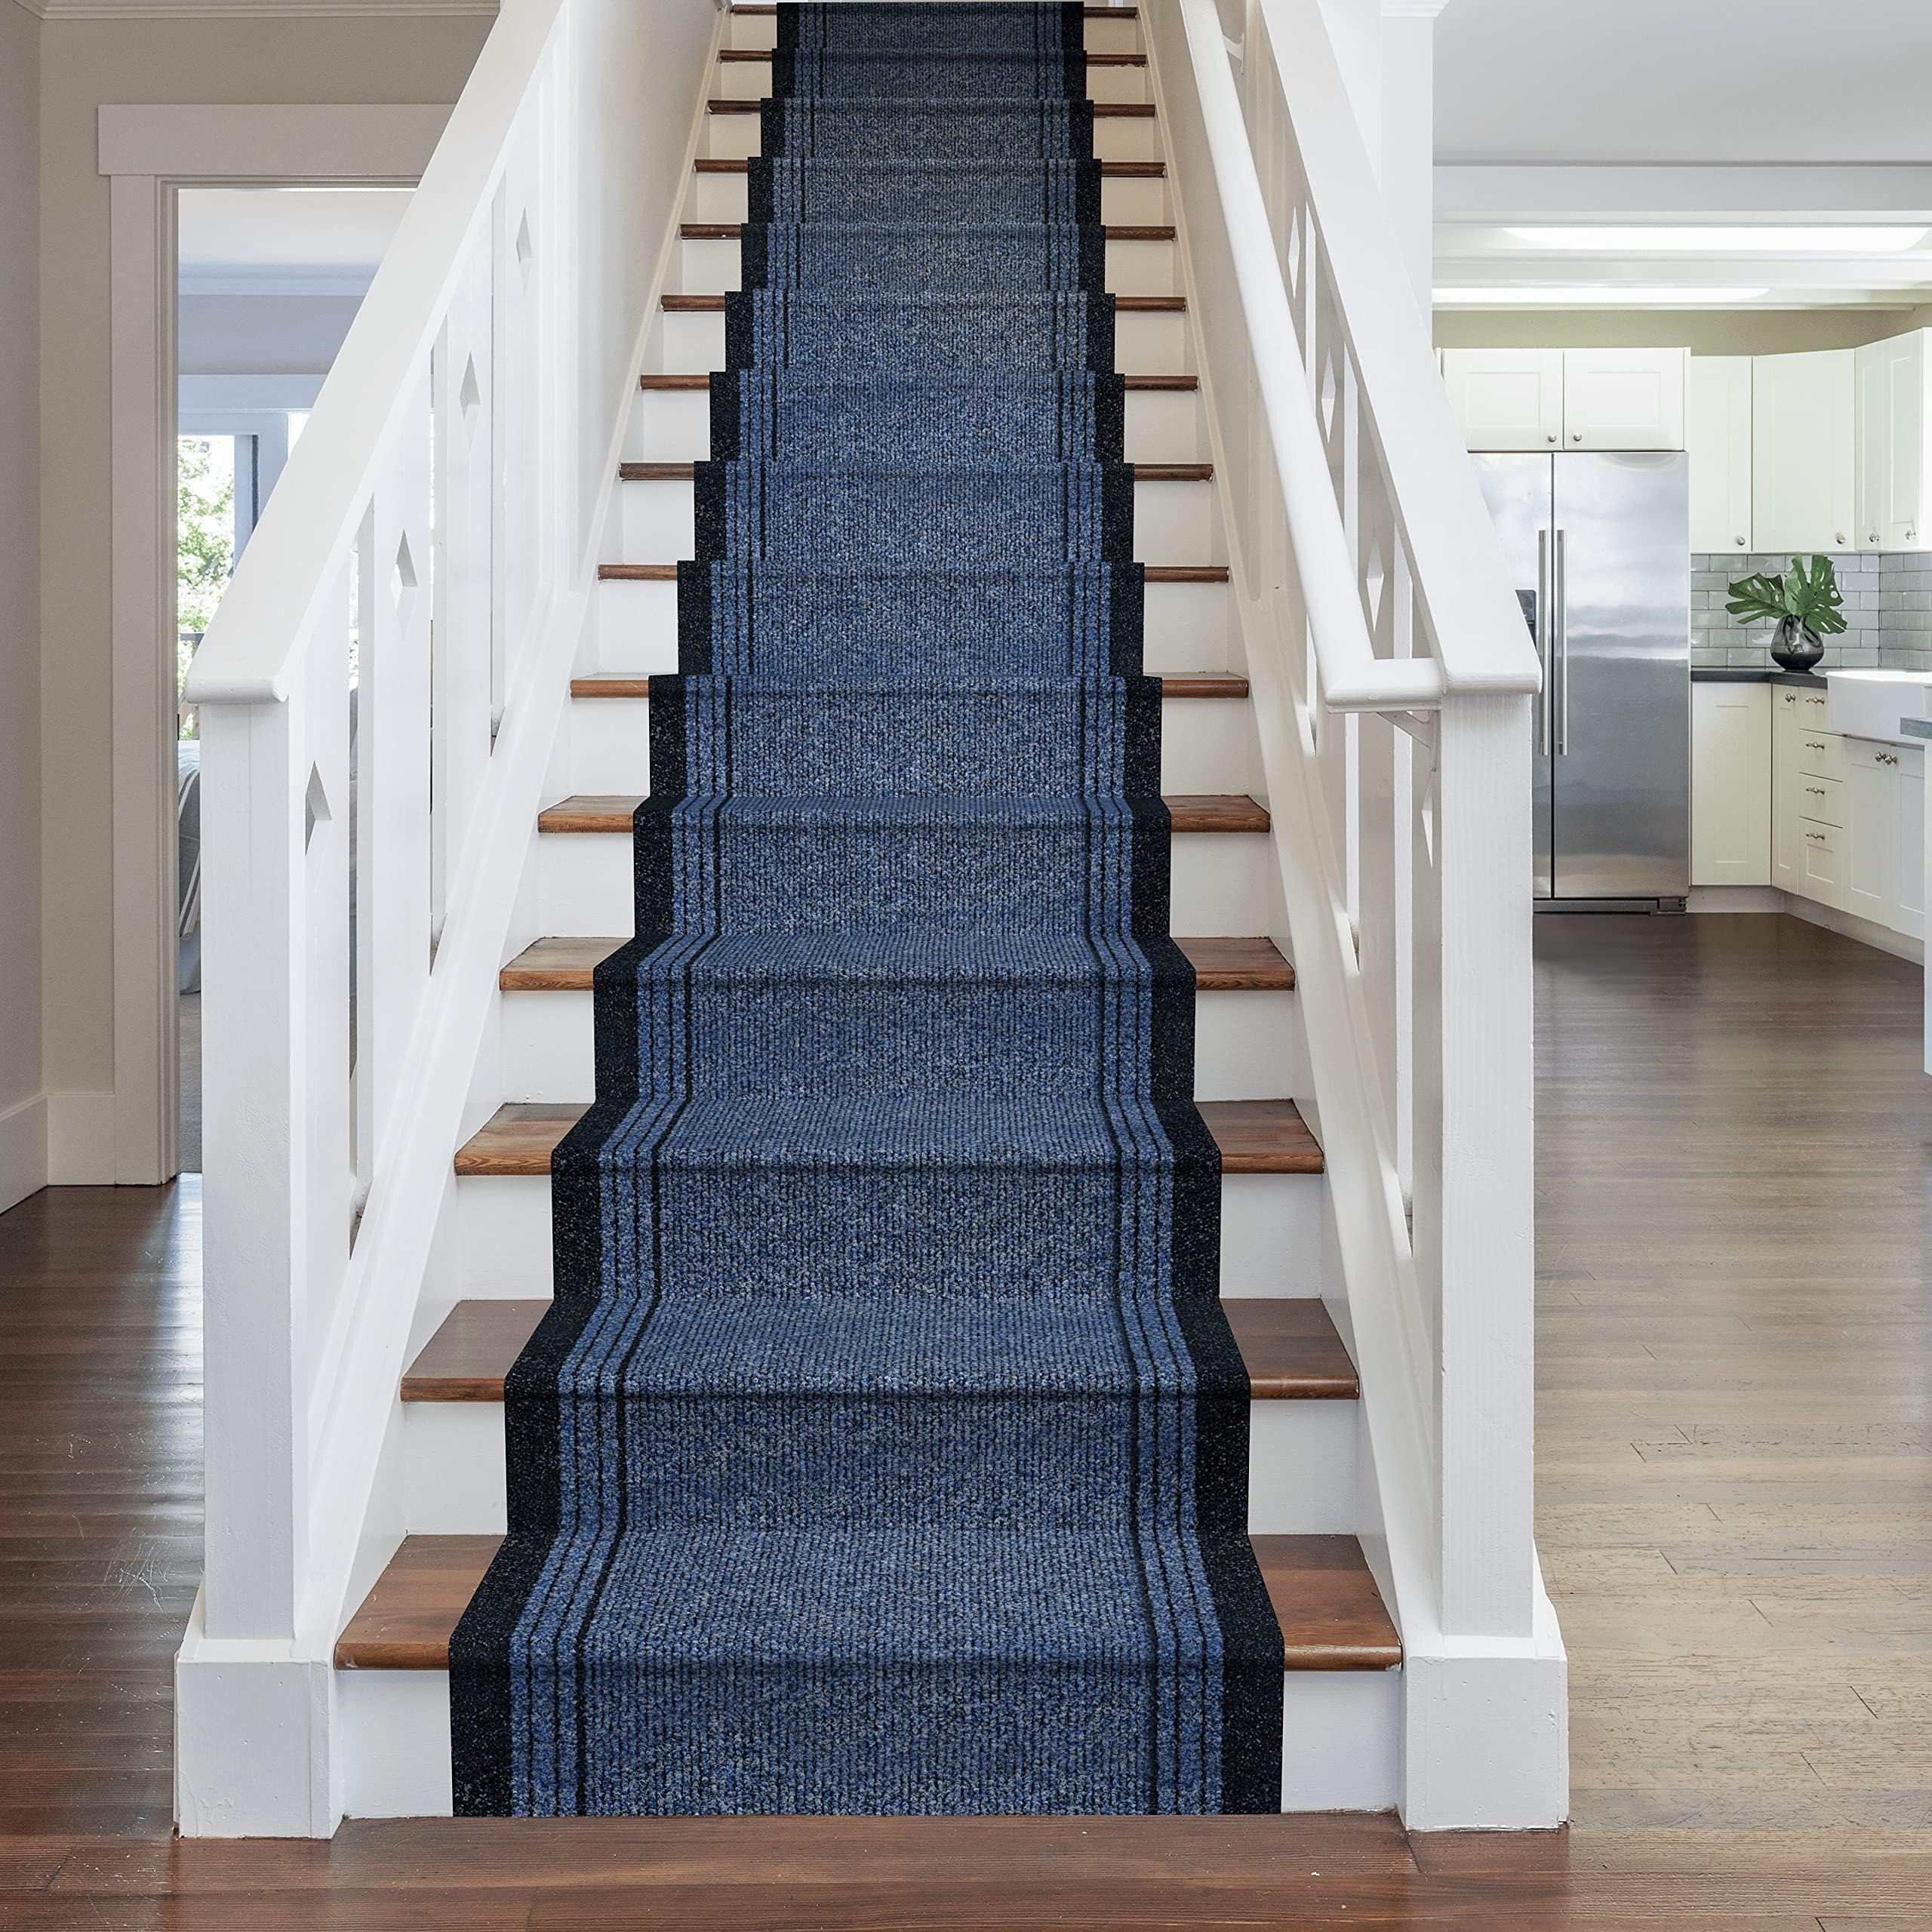 Blue Inca Stair Carpet Runner - image 1